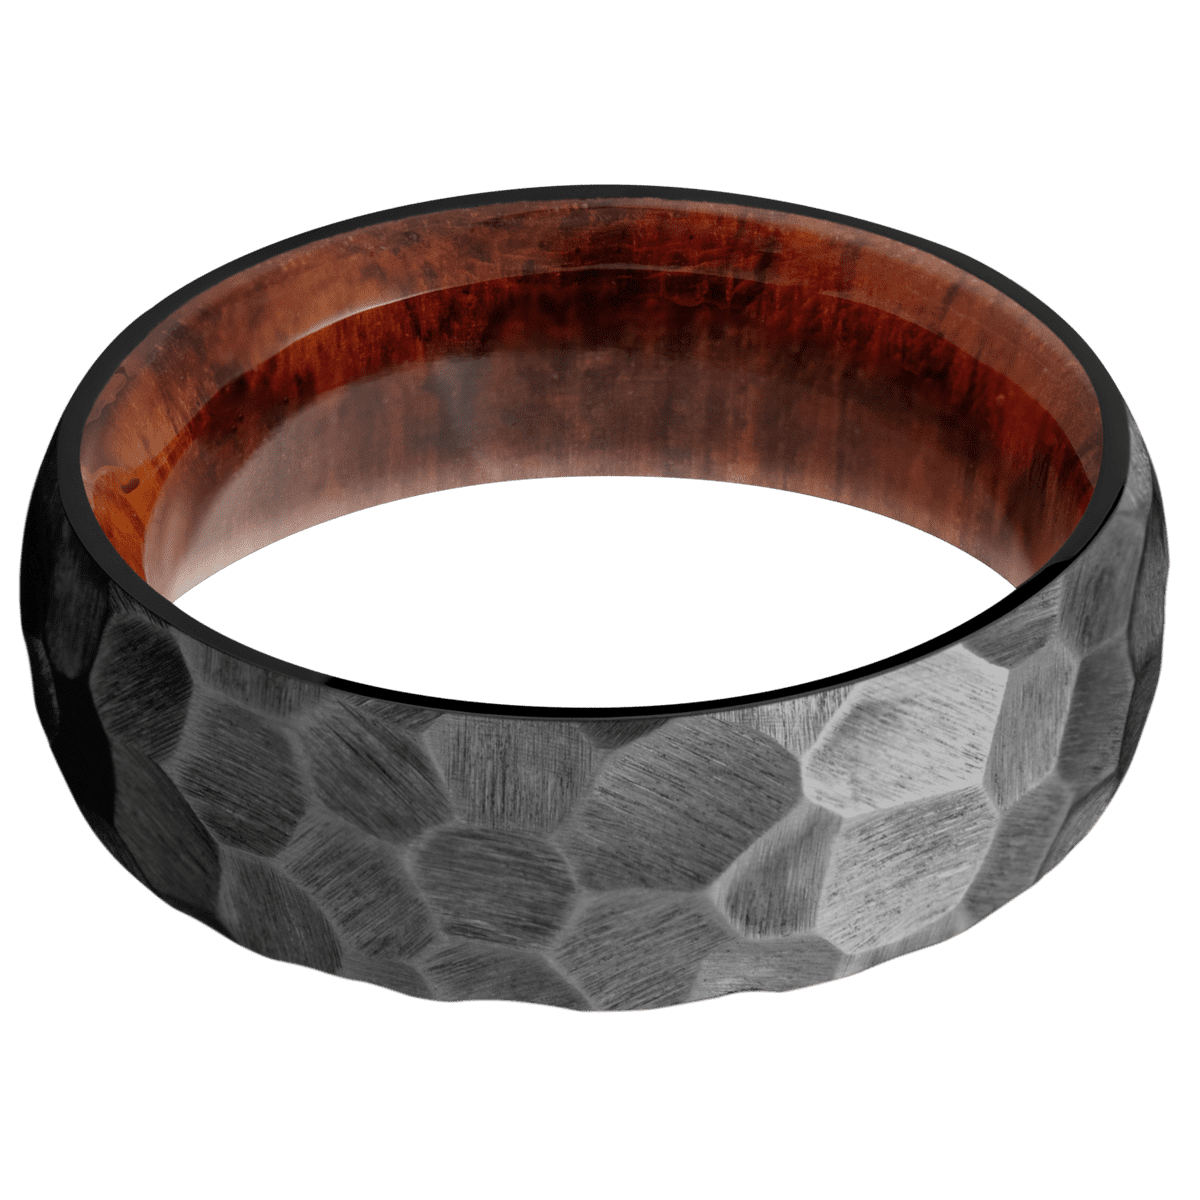 Zirconium + Rock Finish + Snake Wood